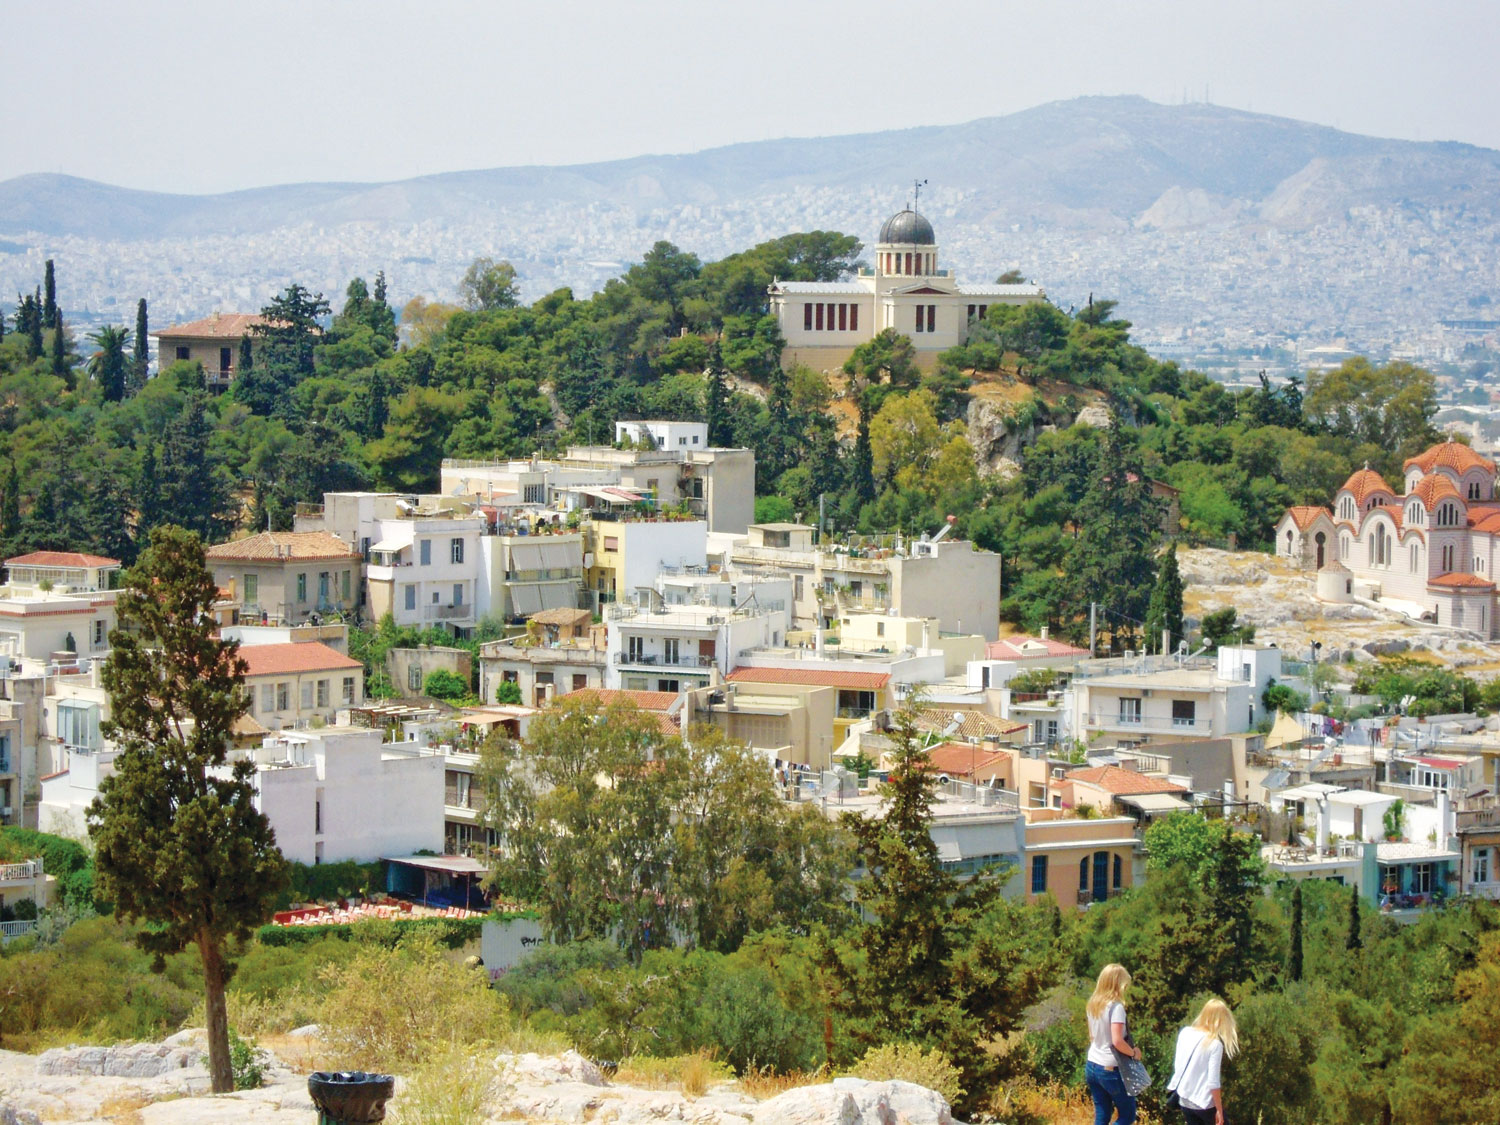 Ο δημοσιογράφος Αλέκος Λιδωρίκης περιηγείται 6 χρόνια στην Αθήνα και καταγράφει αλλαγές